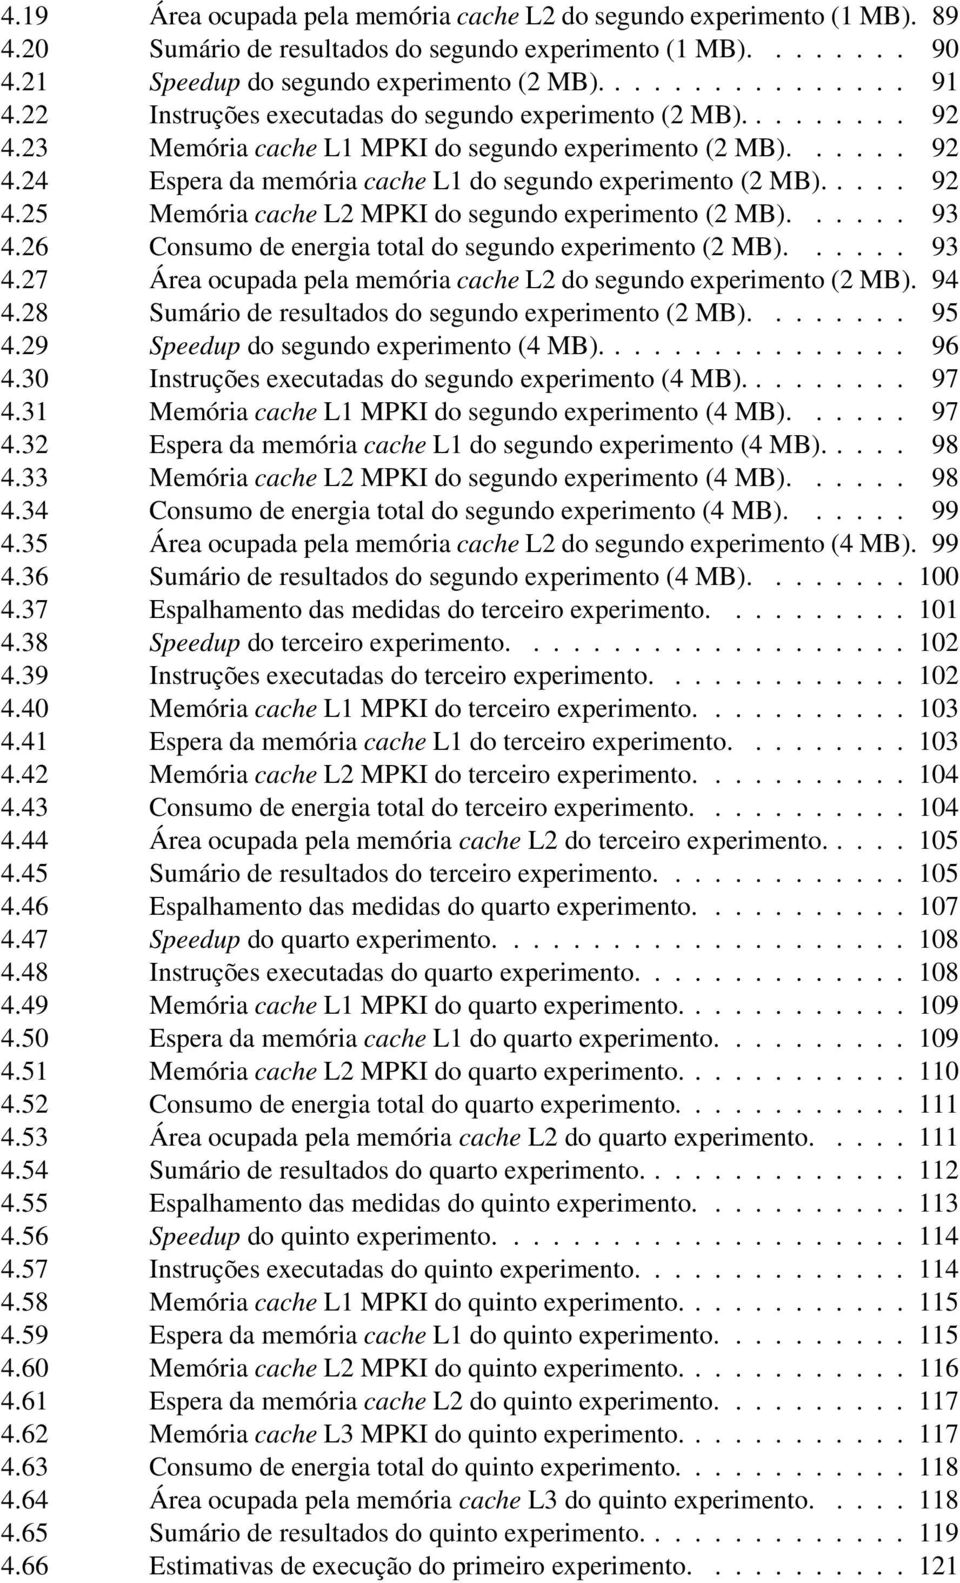 .... 92 4.25 Memória cache L2 MPKI do segundo experimento (2 MB)...... 93 4.26 Consumo de energia total do segundo experimento (2 MB)...... 93 4.27 Área ocupada pela memória cache L2 do segundo experimento (2 MB).